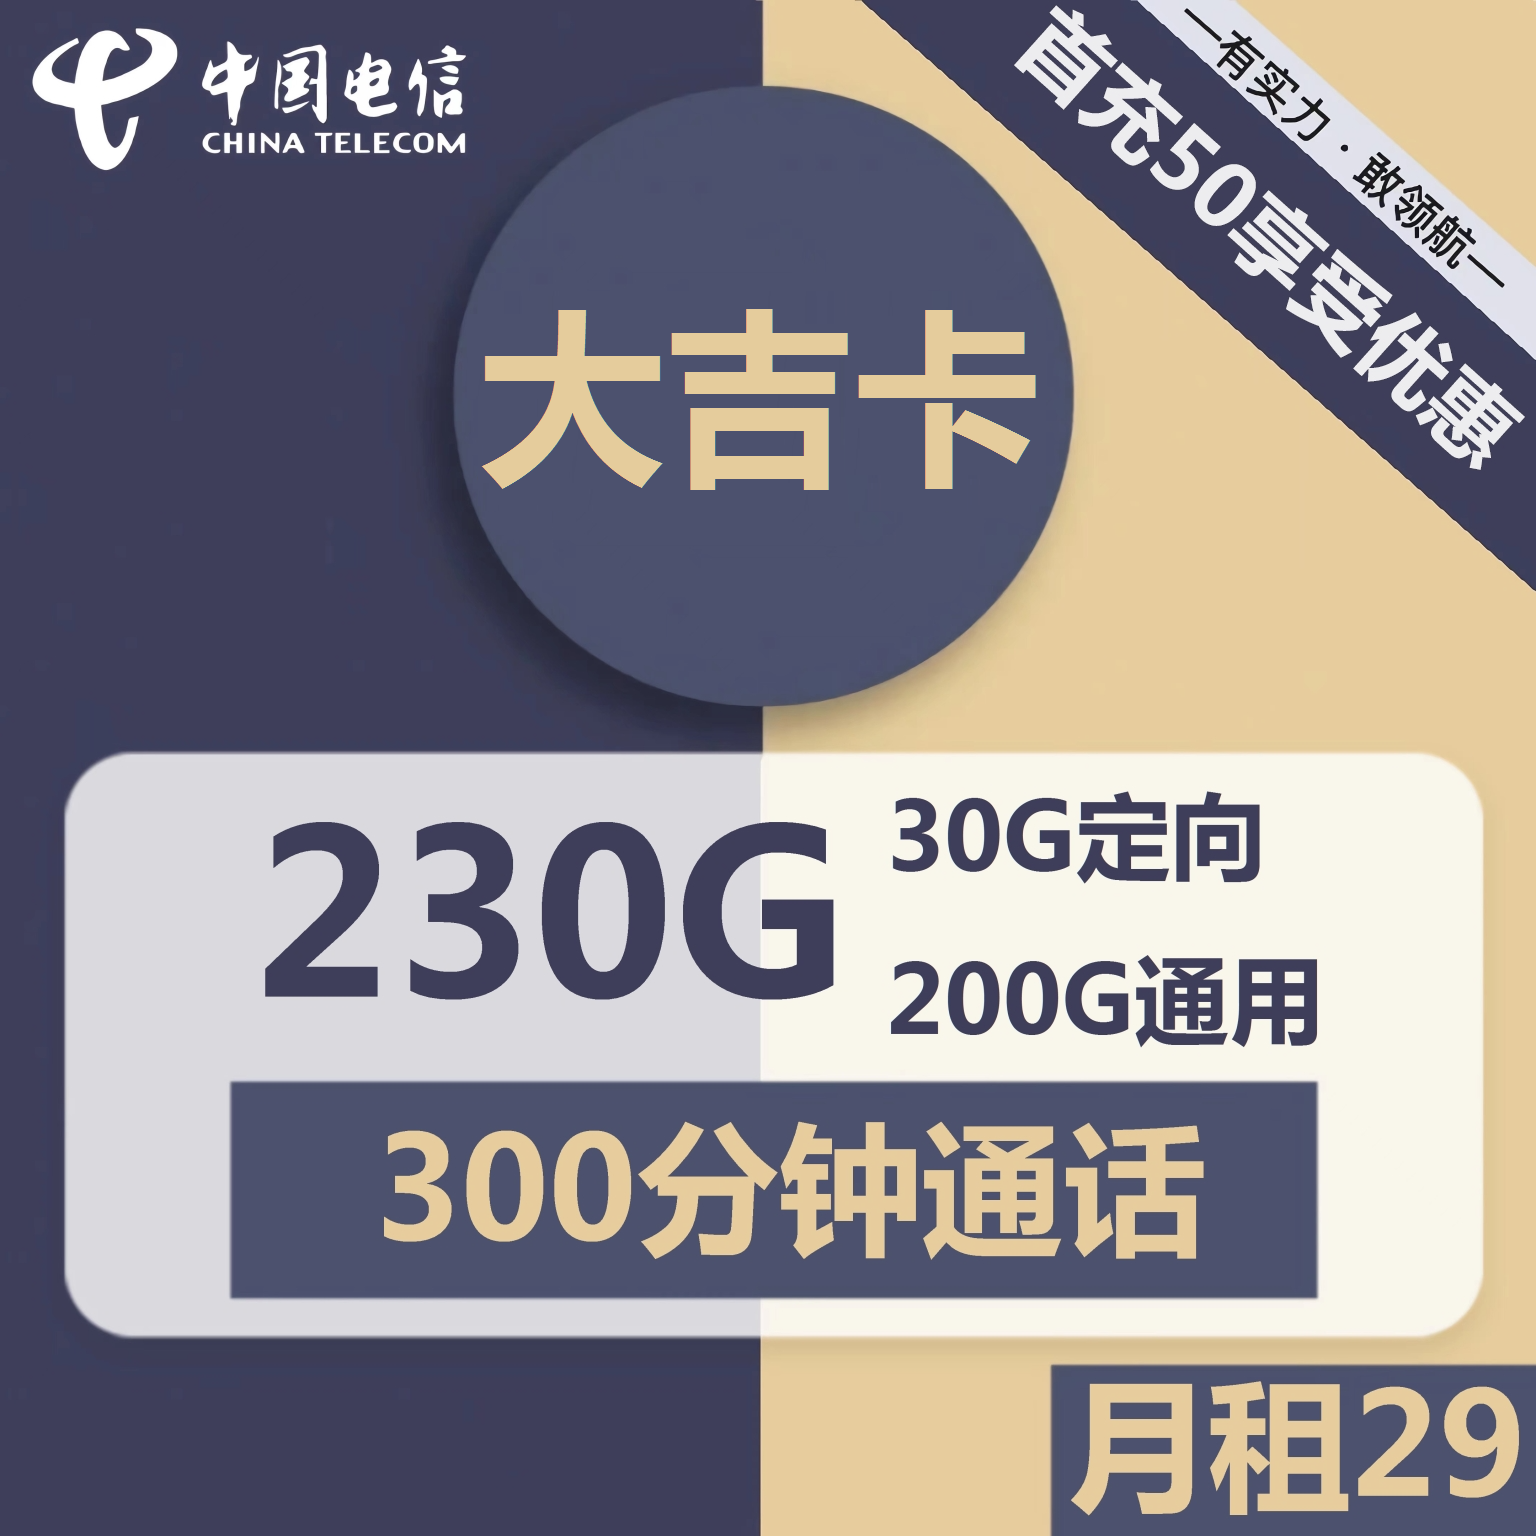 吉林电信大吉卡29元包200G通用+30G定向+300分钟通话